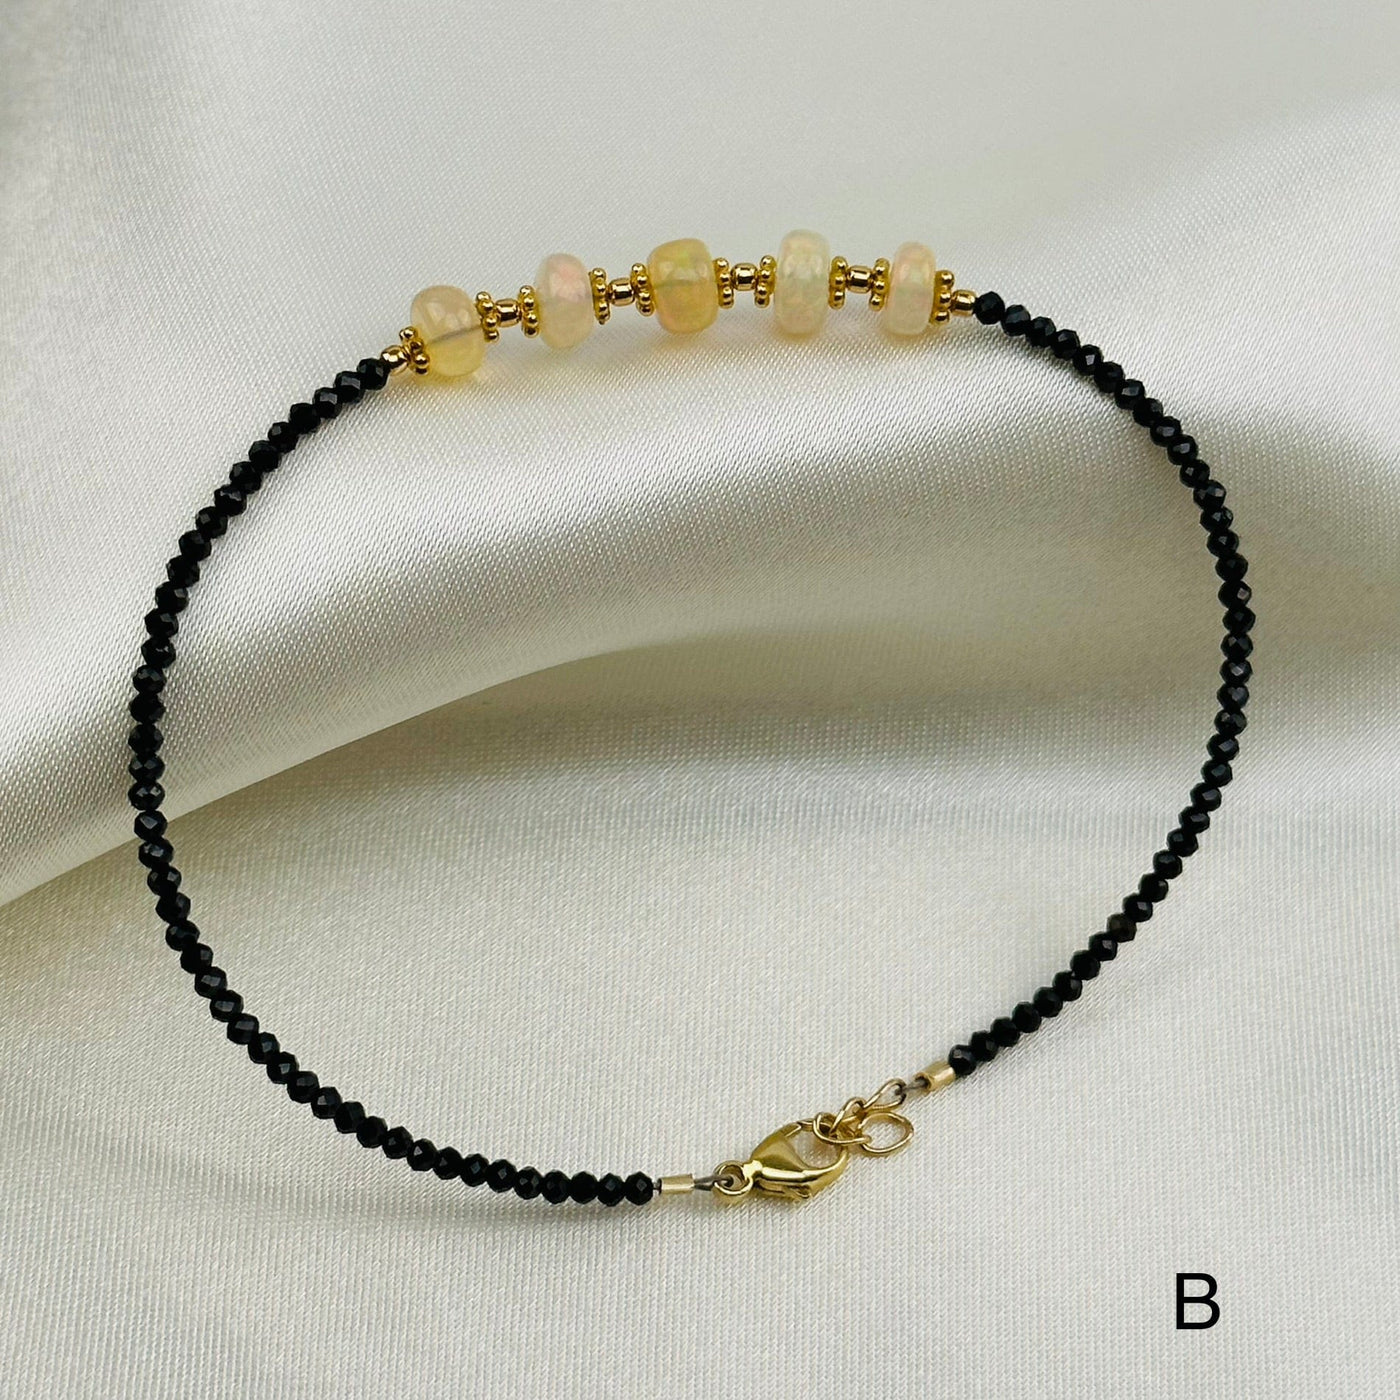 Fancy Opal Bracelet - YOU CHOOSE - option B